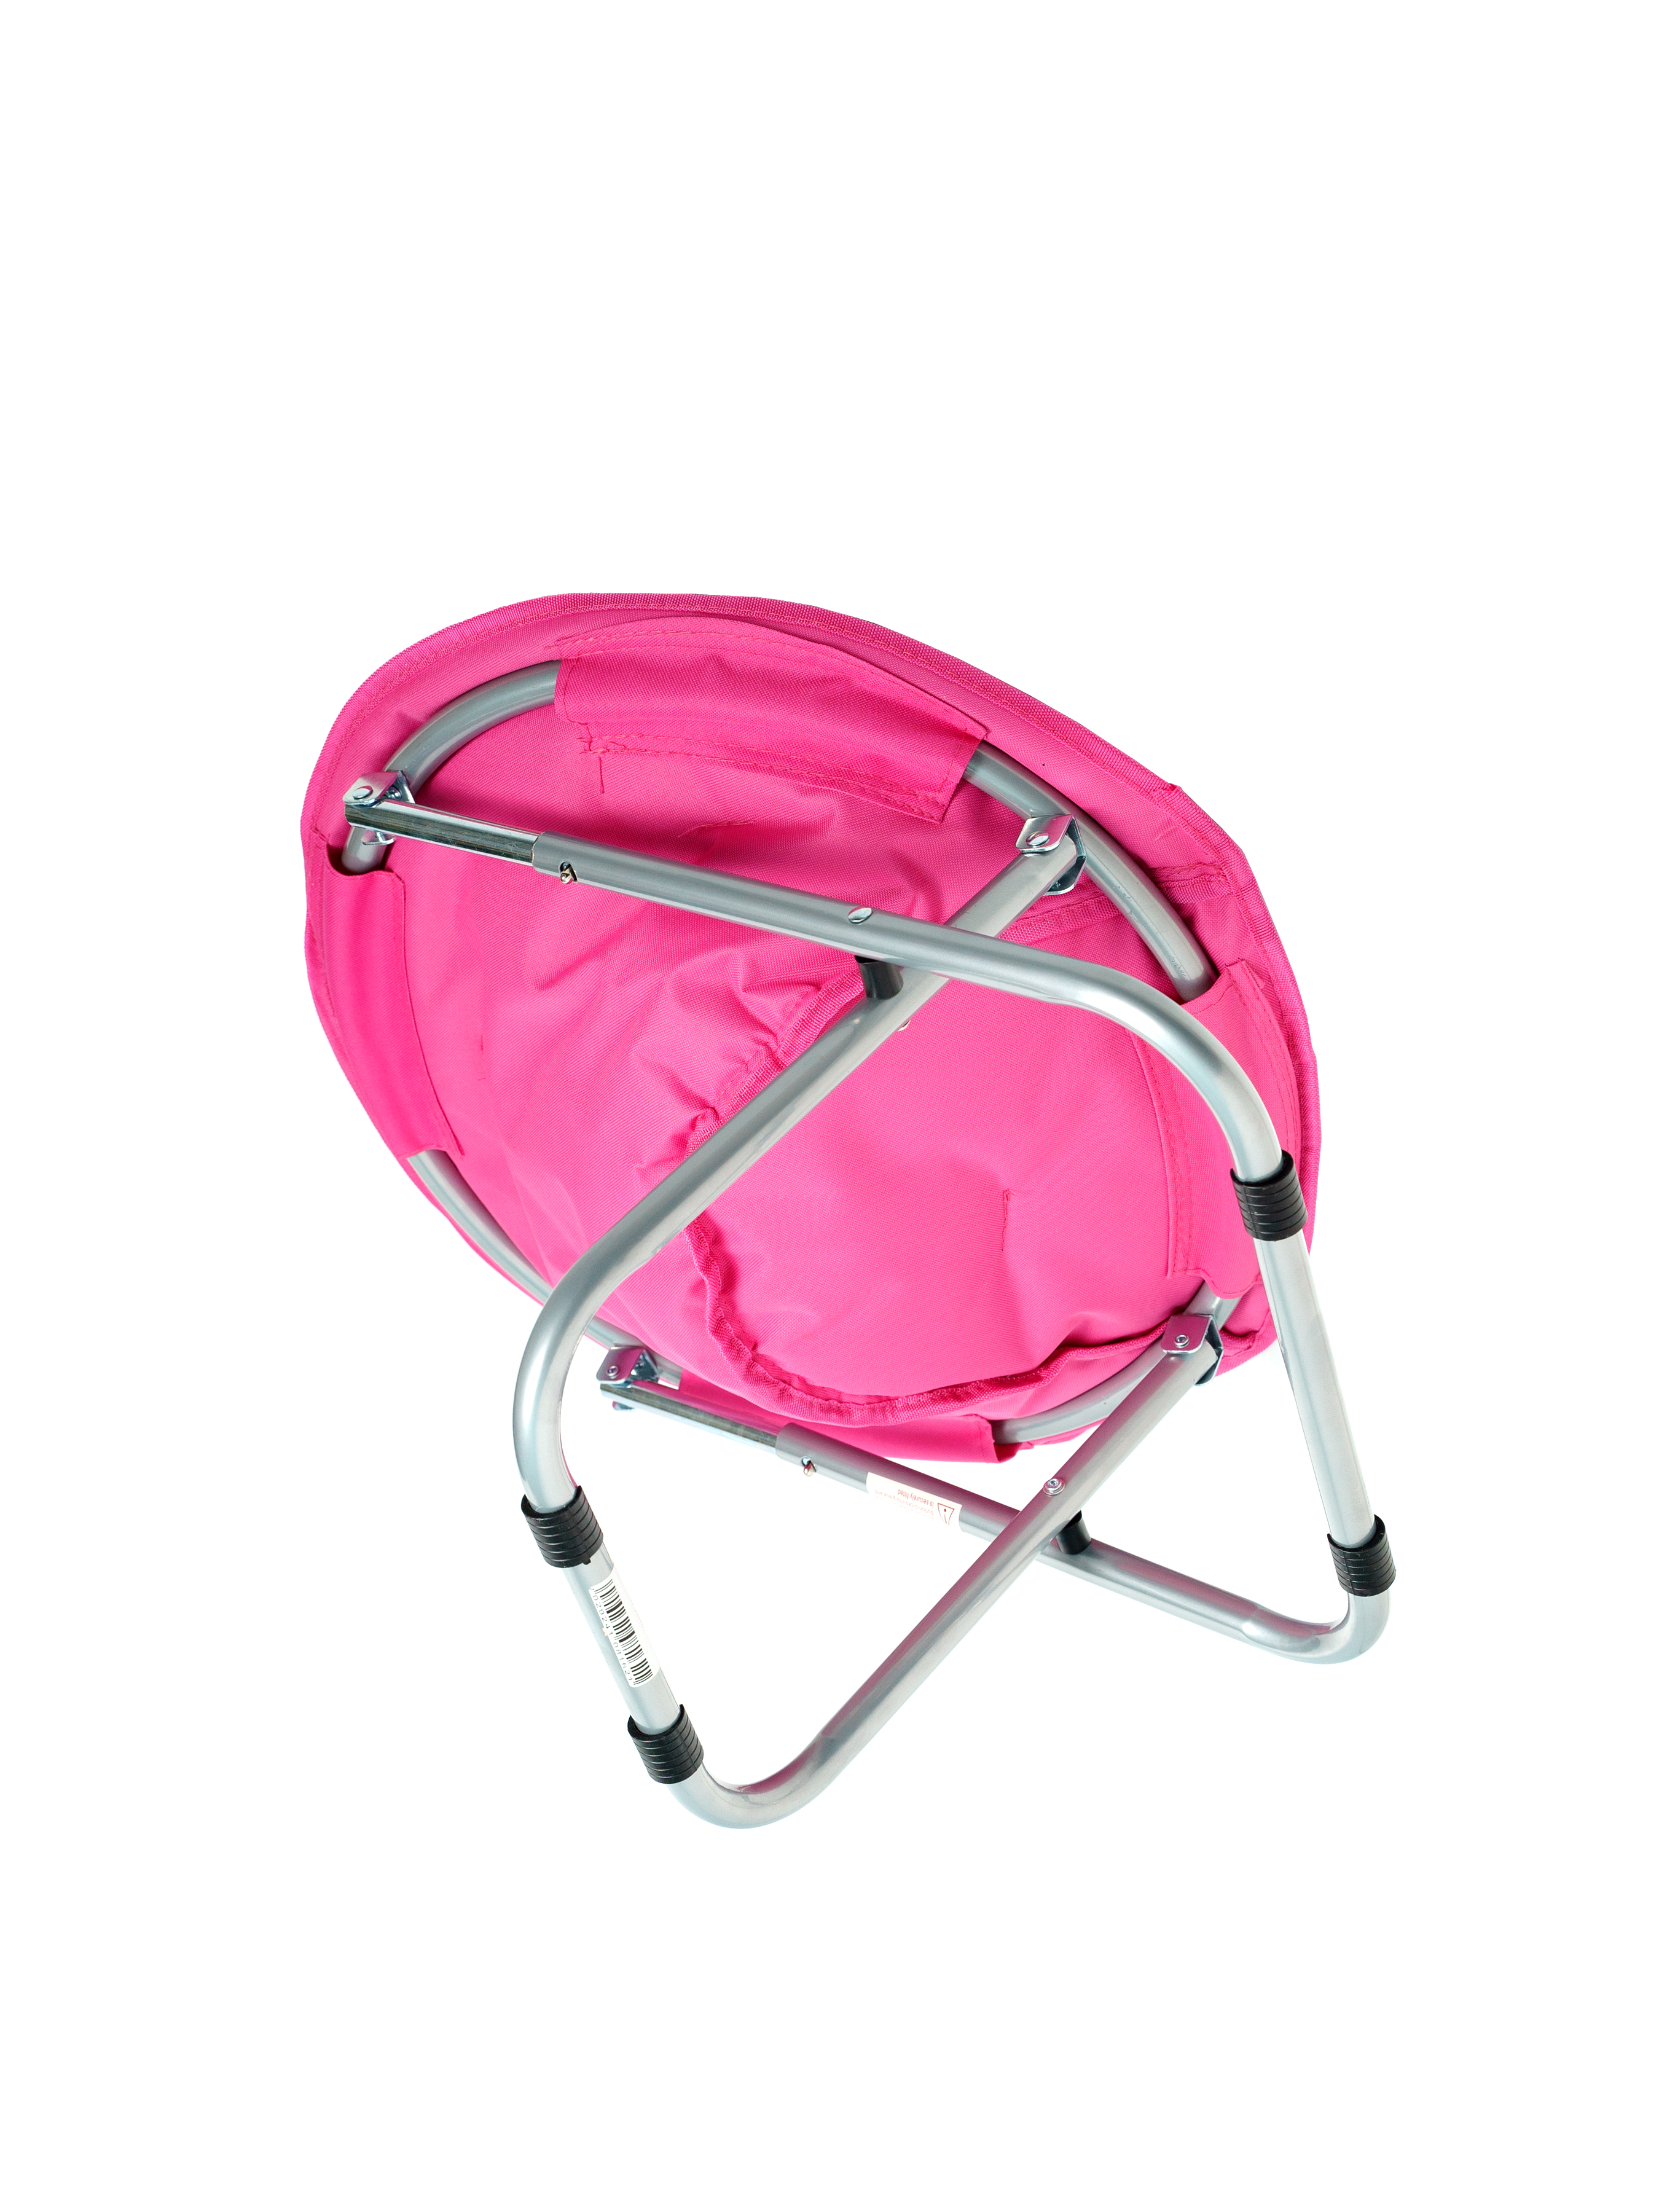 Кресло раскладное со спинкой TUTTO HOT розовый - фото 3